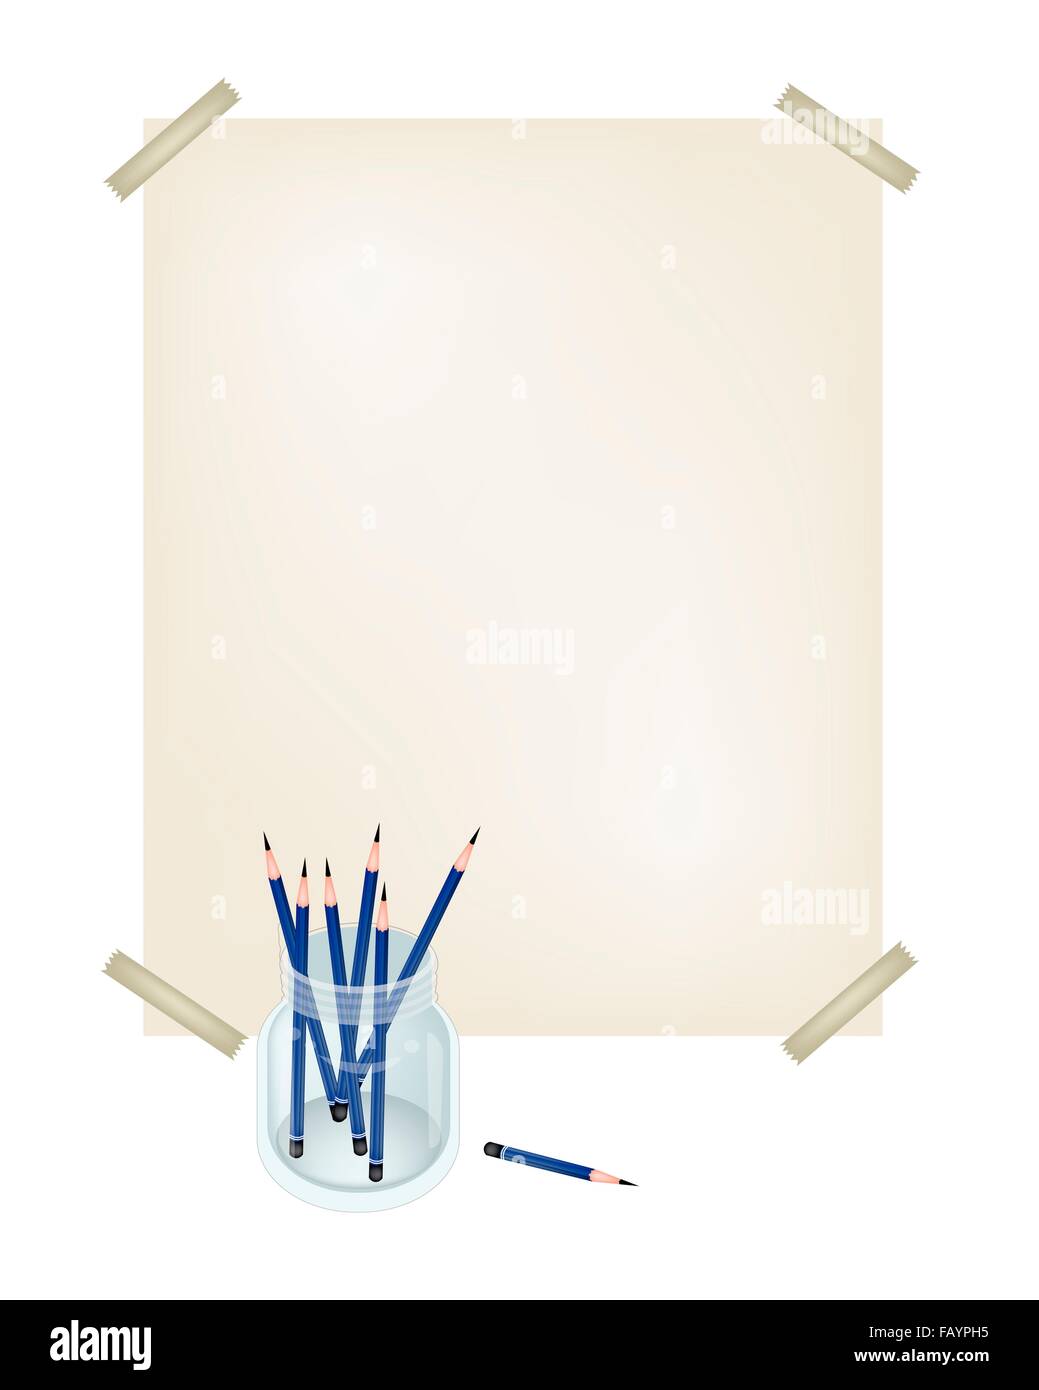 Art liefern, Stapel von geschärften detaillierte Bleistifte in ein Glas mit einer Zeichnung oder Skizze und zeichnen Sie ein Bild. Stockfoto